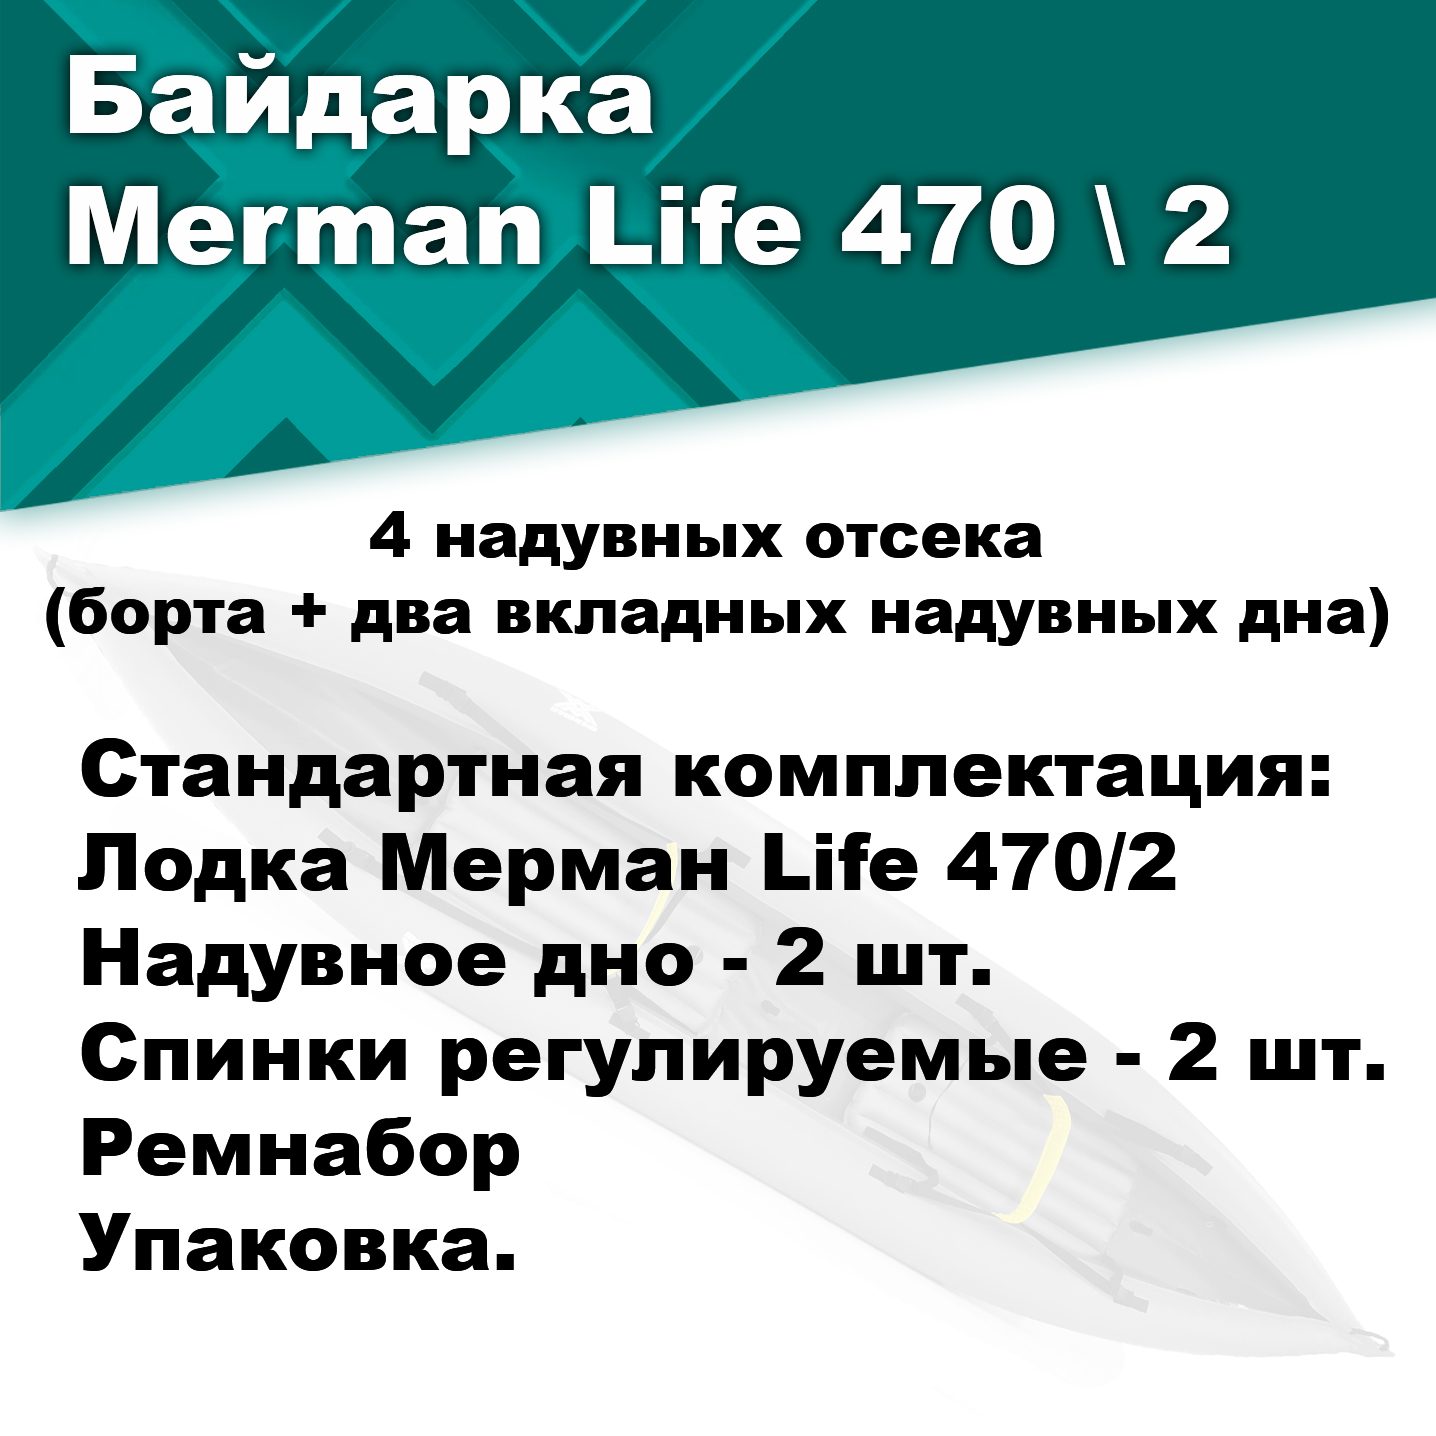 Байдарка надувная Мерман Лайф 470/2, Merman Life 470/2